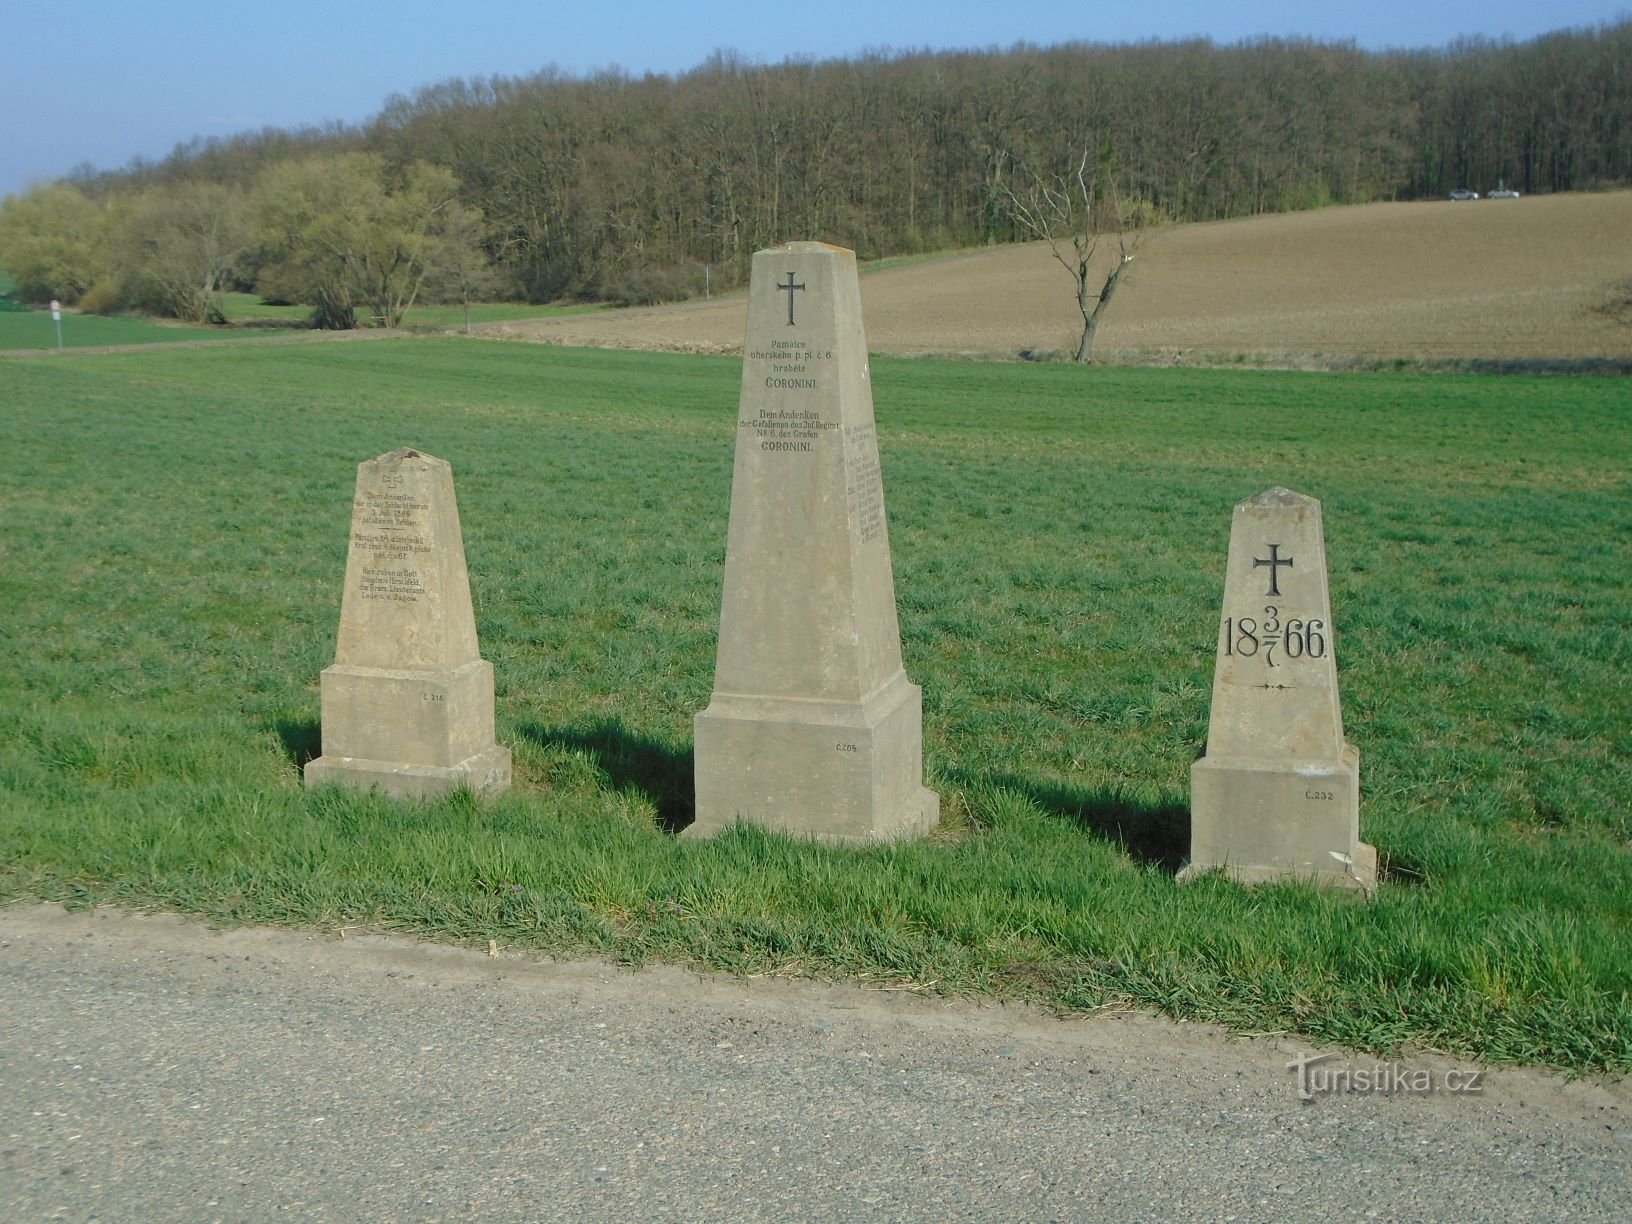 Spomeniki bitke iz leta 1866 ob cesti (Čistěves, 7.4.2019. XNUMX. XNUMX)